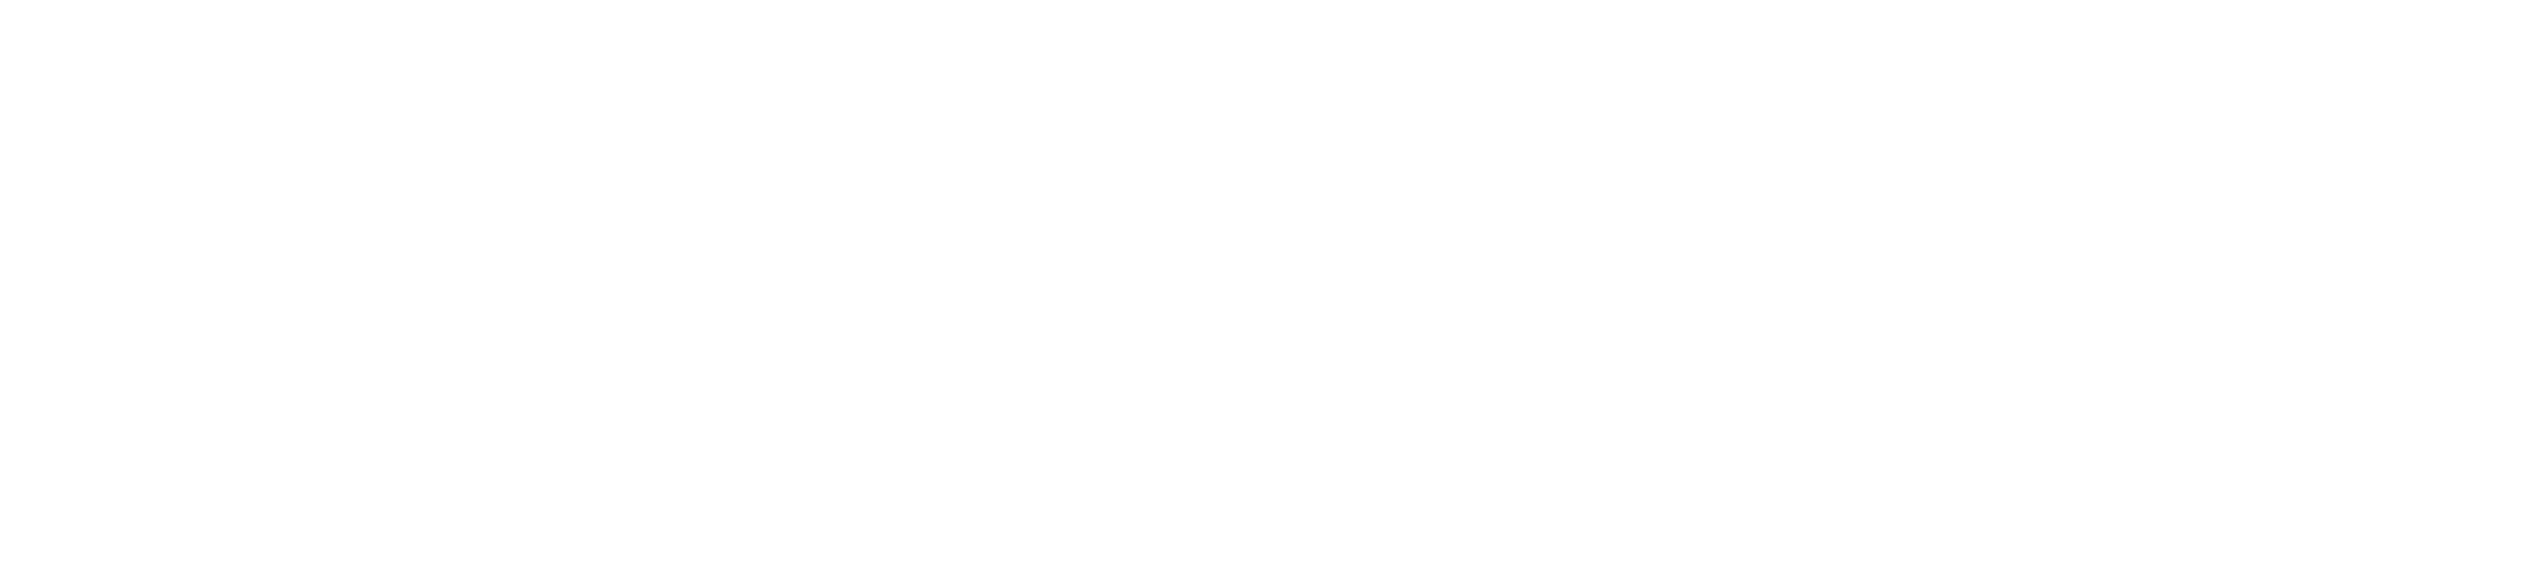 Rausch-Logo_2013_RZ_weiss